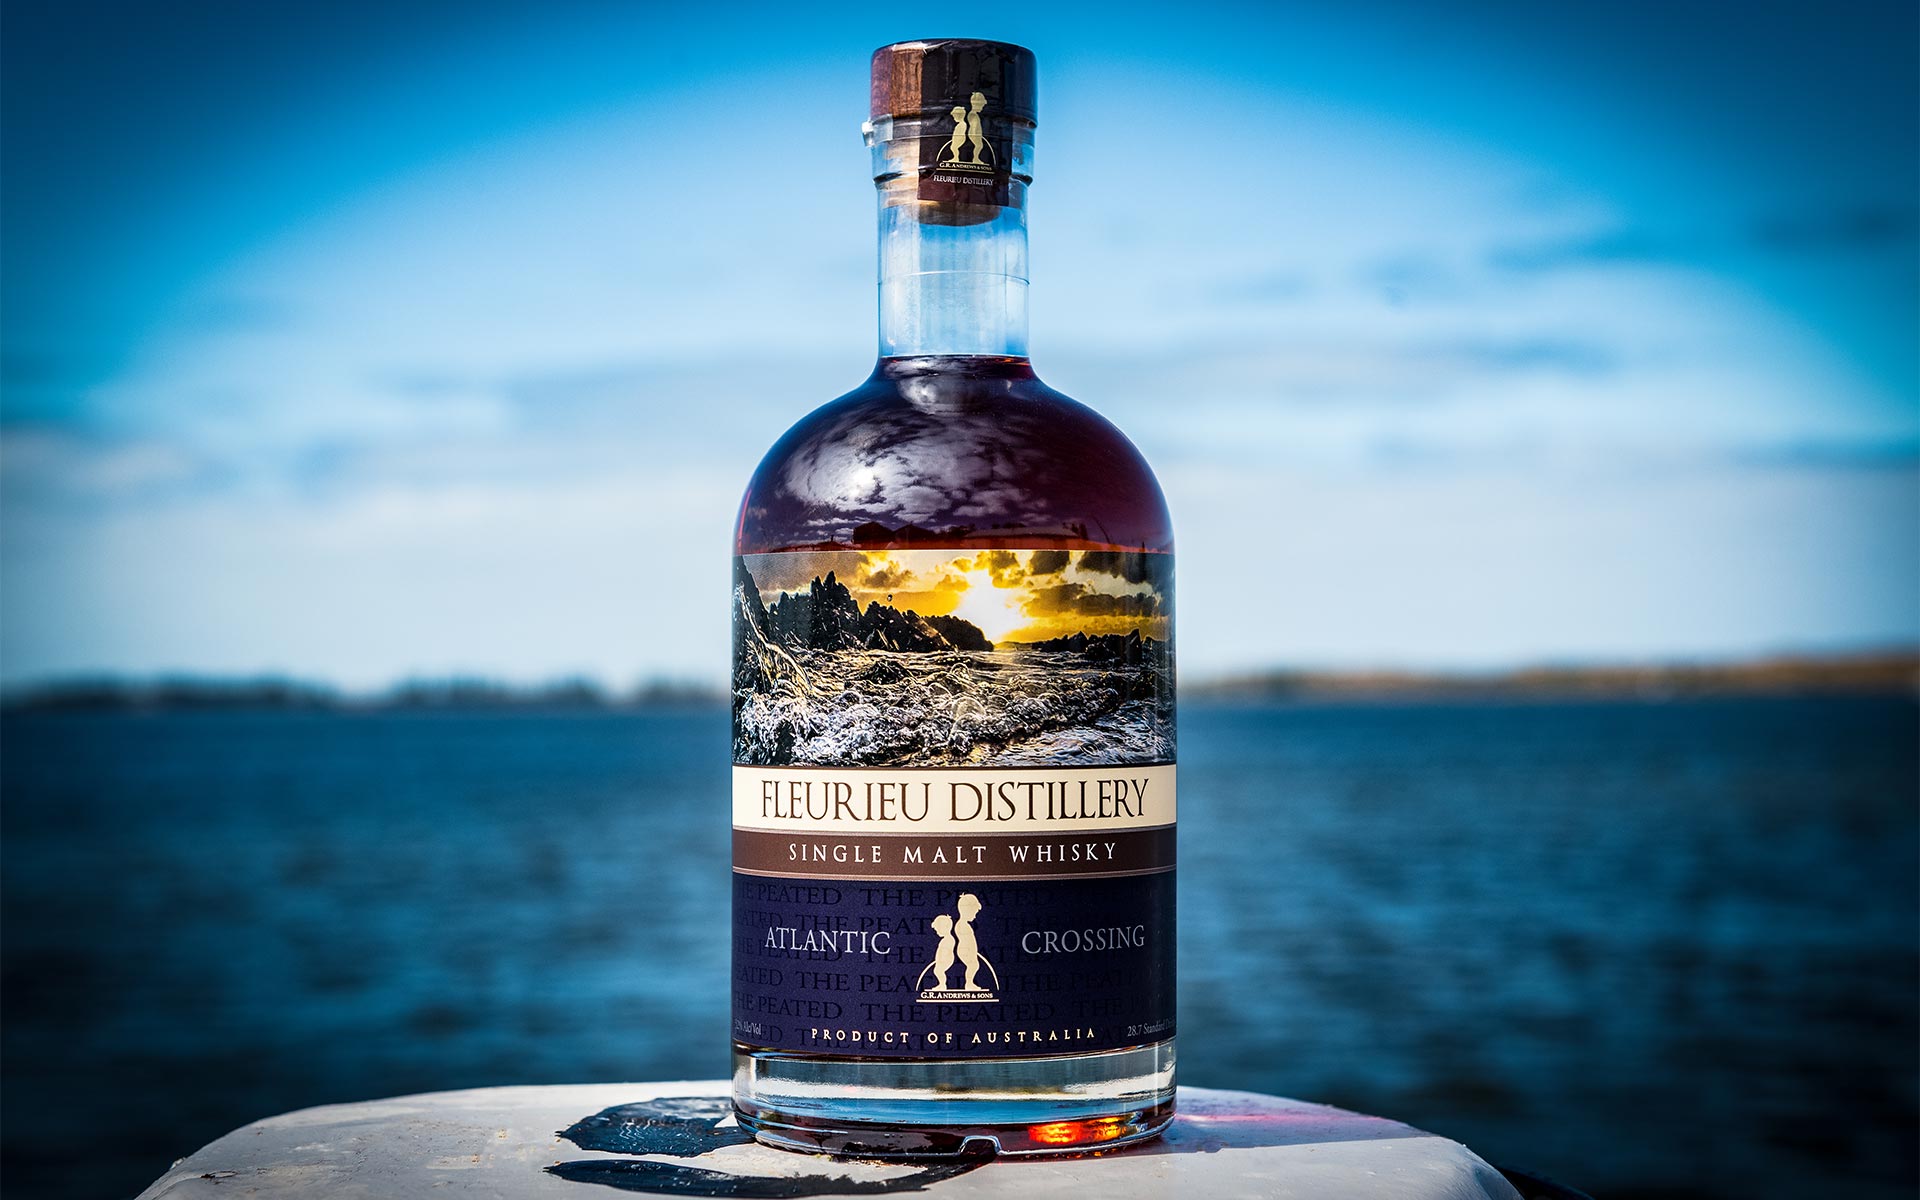 Fleurieu Distillery International Award Winners - Whisky bottle infront of the lake